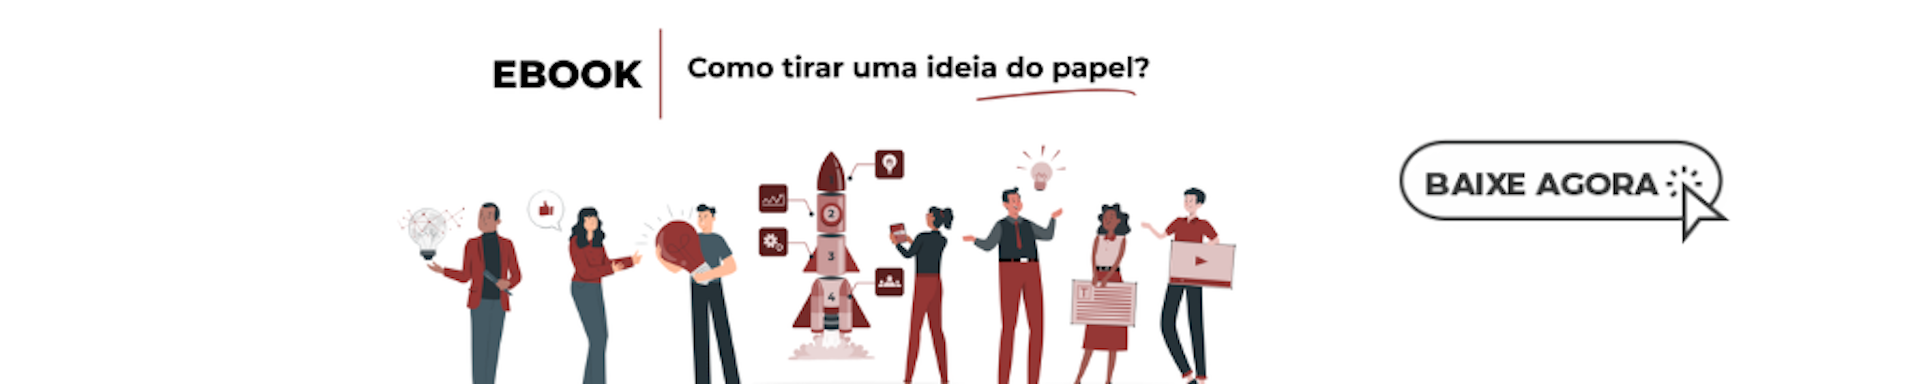 Banner do ebook "Como tirar uma ideia do papel?".